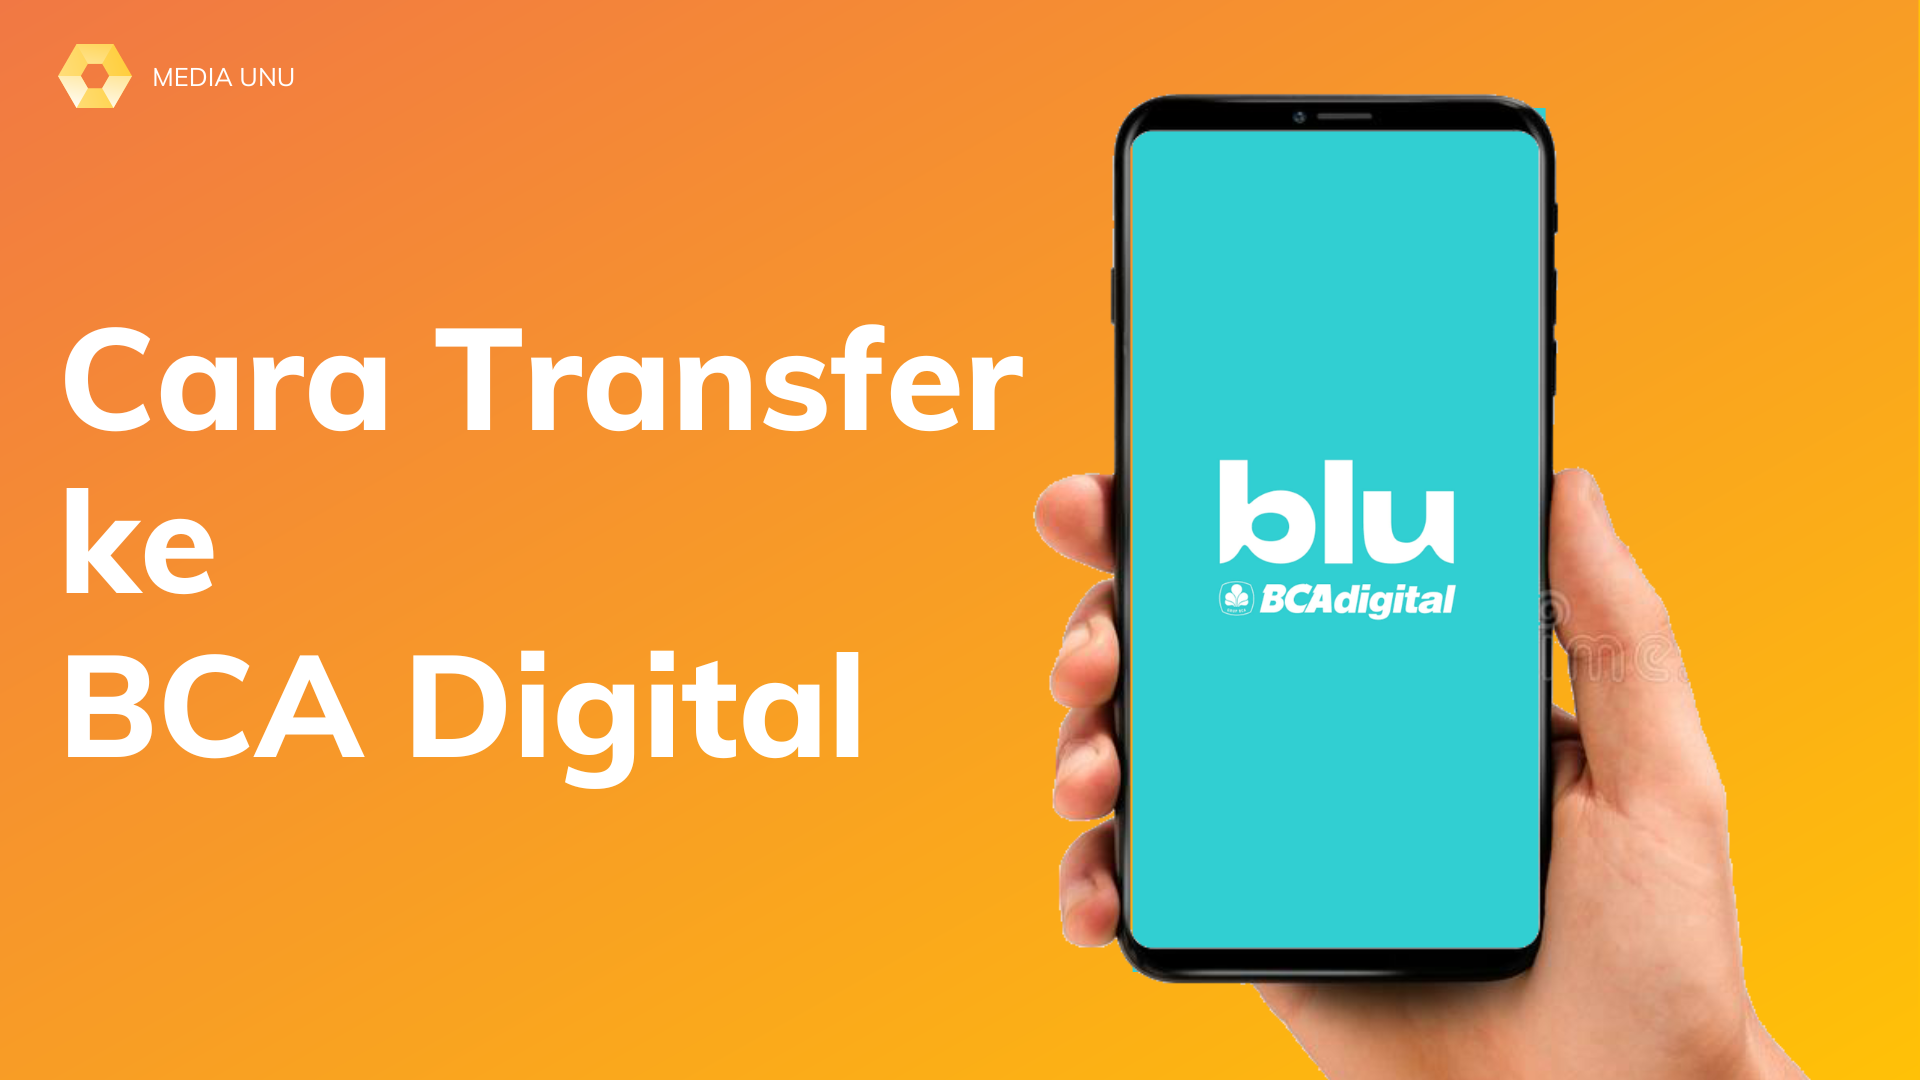 Cara Transfer ke BCA Digital